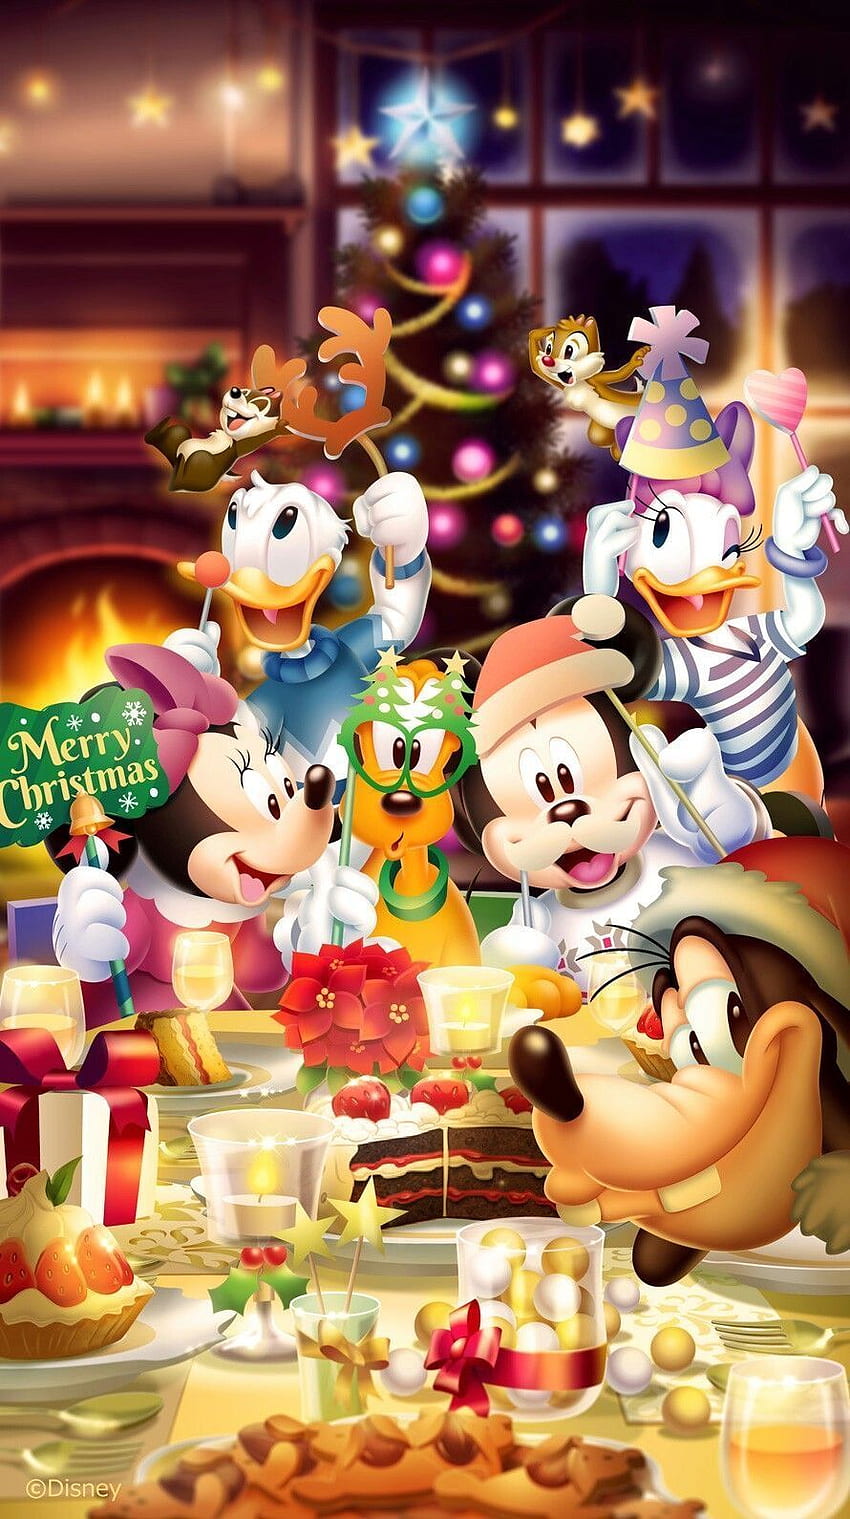 Chúa Giáng sinh: Mickey Mouse cùng các nhân vật trong phim hoạt hình Disney sẽ mang đến cho bạn những khoảnh khắc đáng nhớ nhất trong Lễ Giáng sinh này. Hãy cùng nhìn lại những kỷ niệm đáng nhớ với Chúa Giáng sinh của chúng ta.